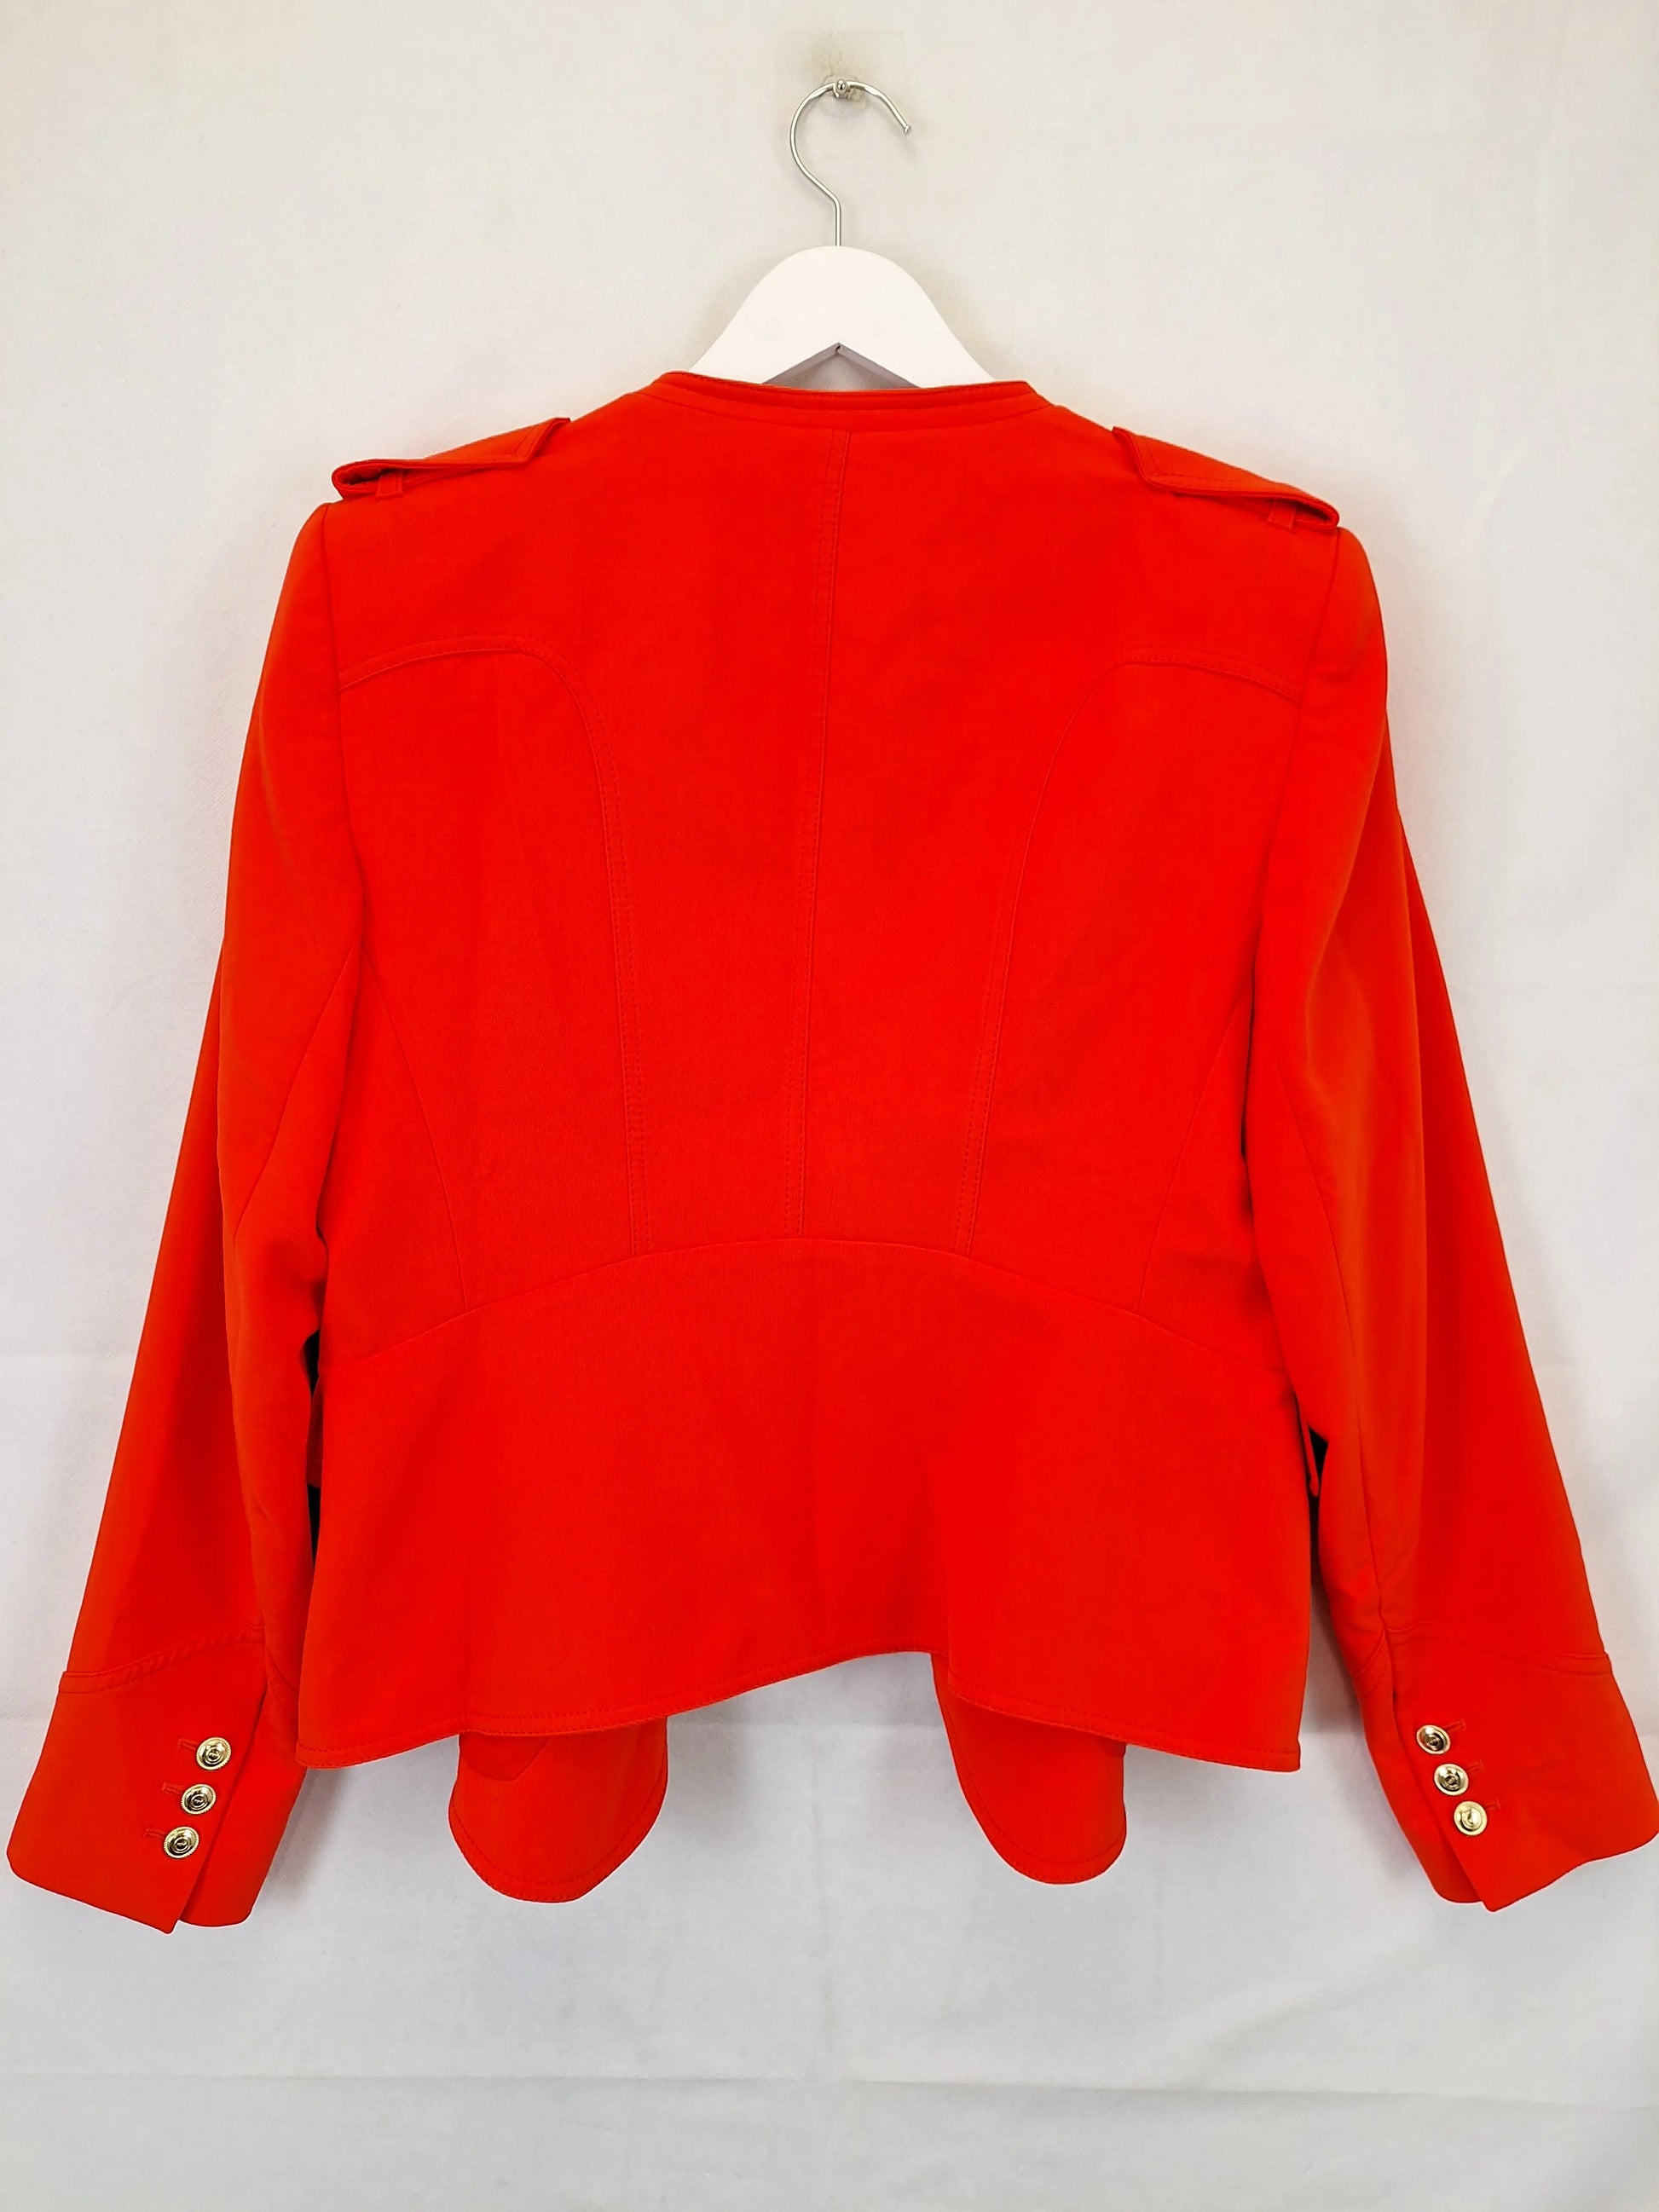 Karen Millen Tangerine Military Style Blazer Size 18 by SwapUp-Online Second Hand Store-Online Thrift Store